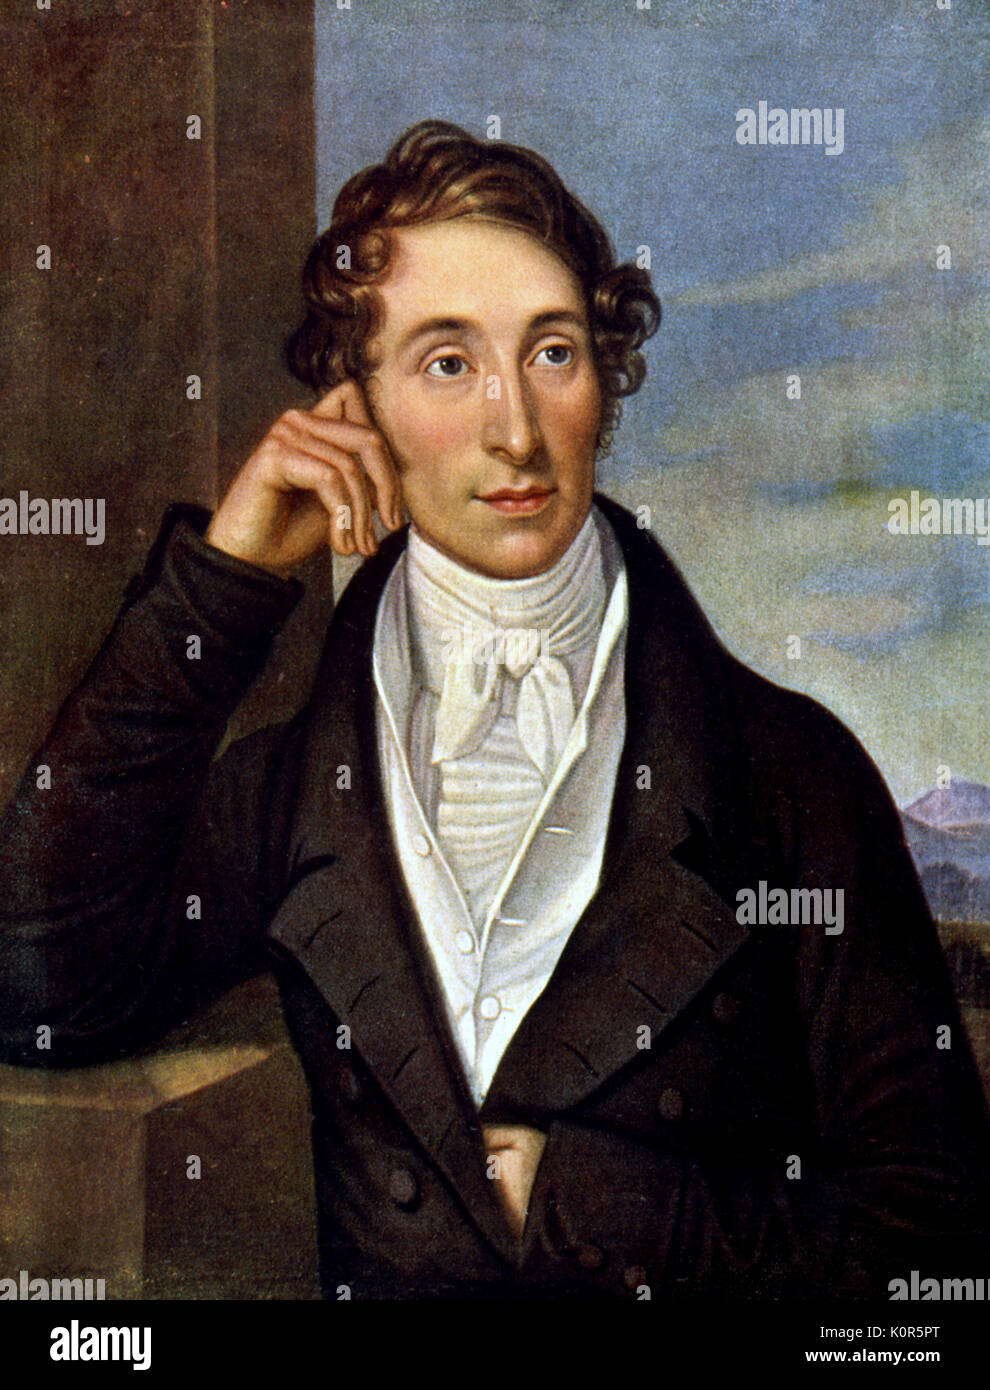 Carl Maria von Weber von Caroline Bardua. Deutsche Komponist, Dirigent, Pianist und Kritiker, 1786-1826. Stockfoto